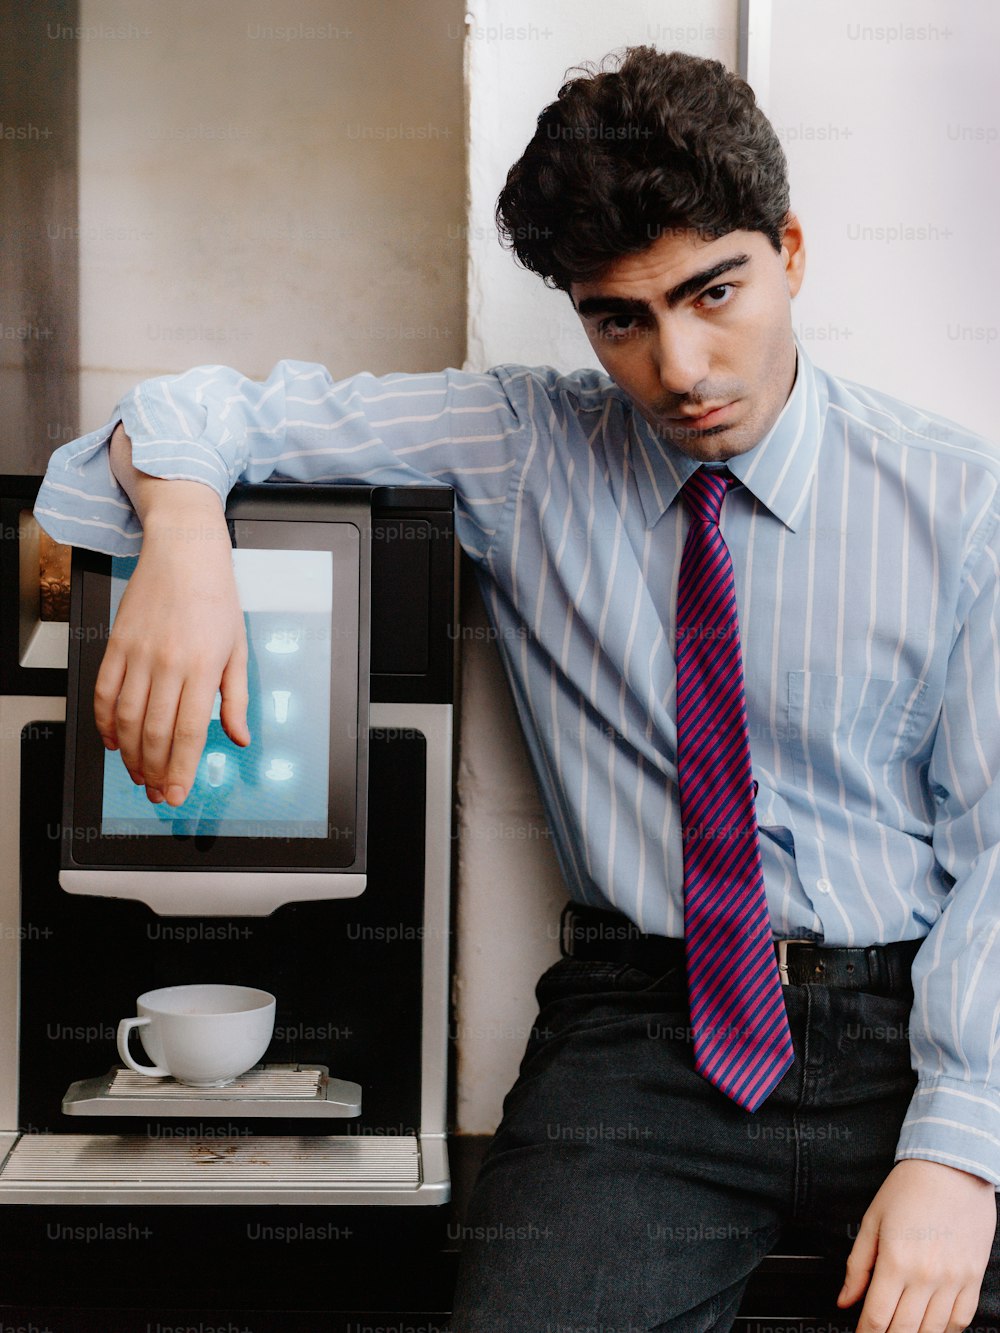 Ein Mann mit Krawatte lehnt sich an eine Kaffeemaschine